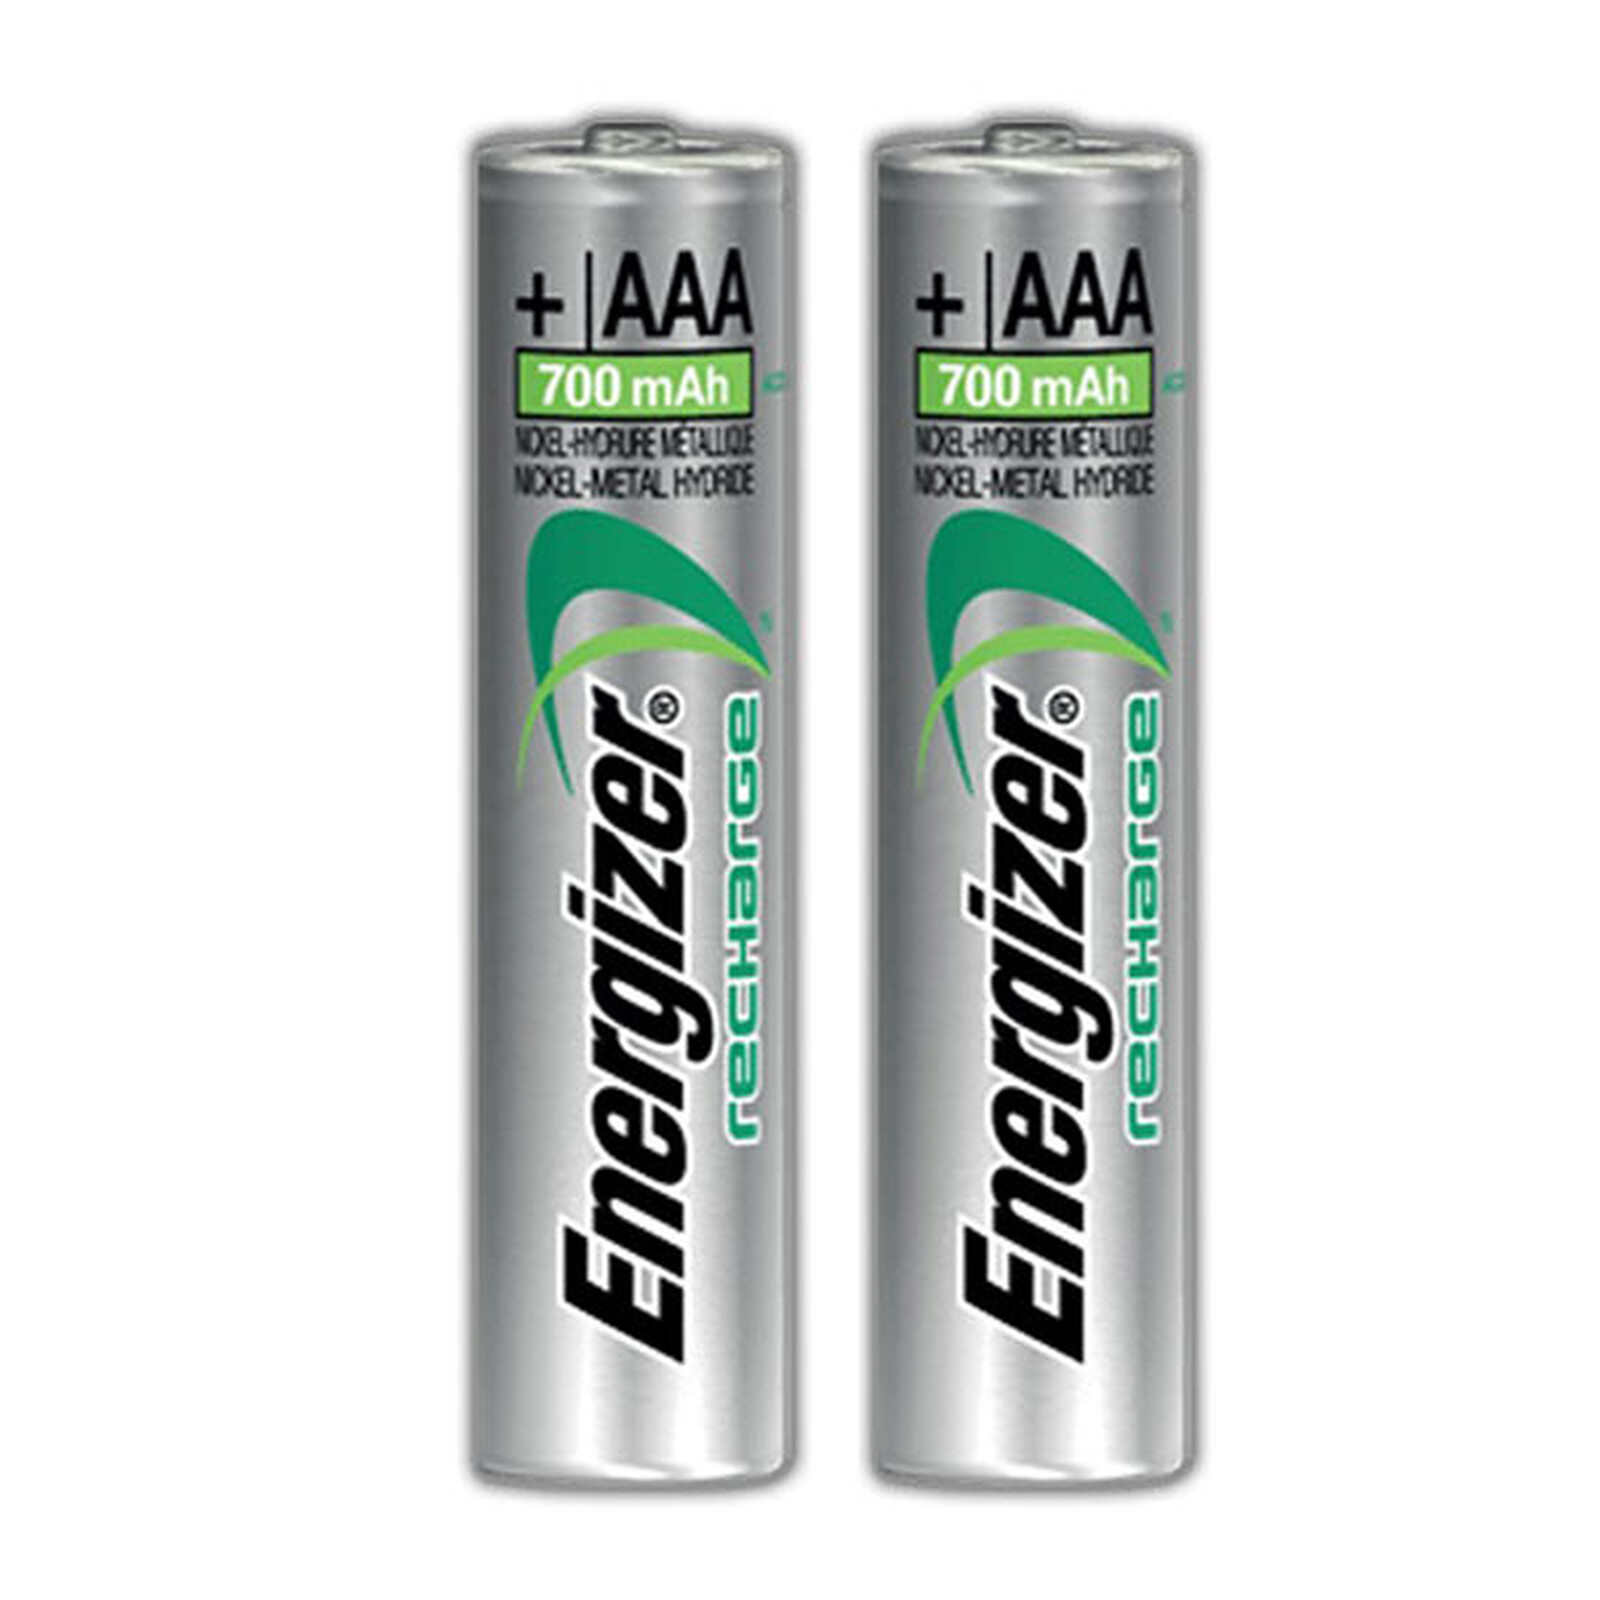 Energizer Max AA (par 4) - Pile & chargeur - LDLC